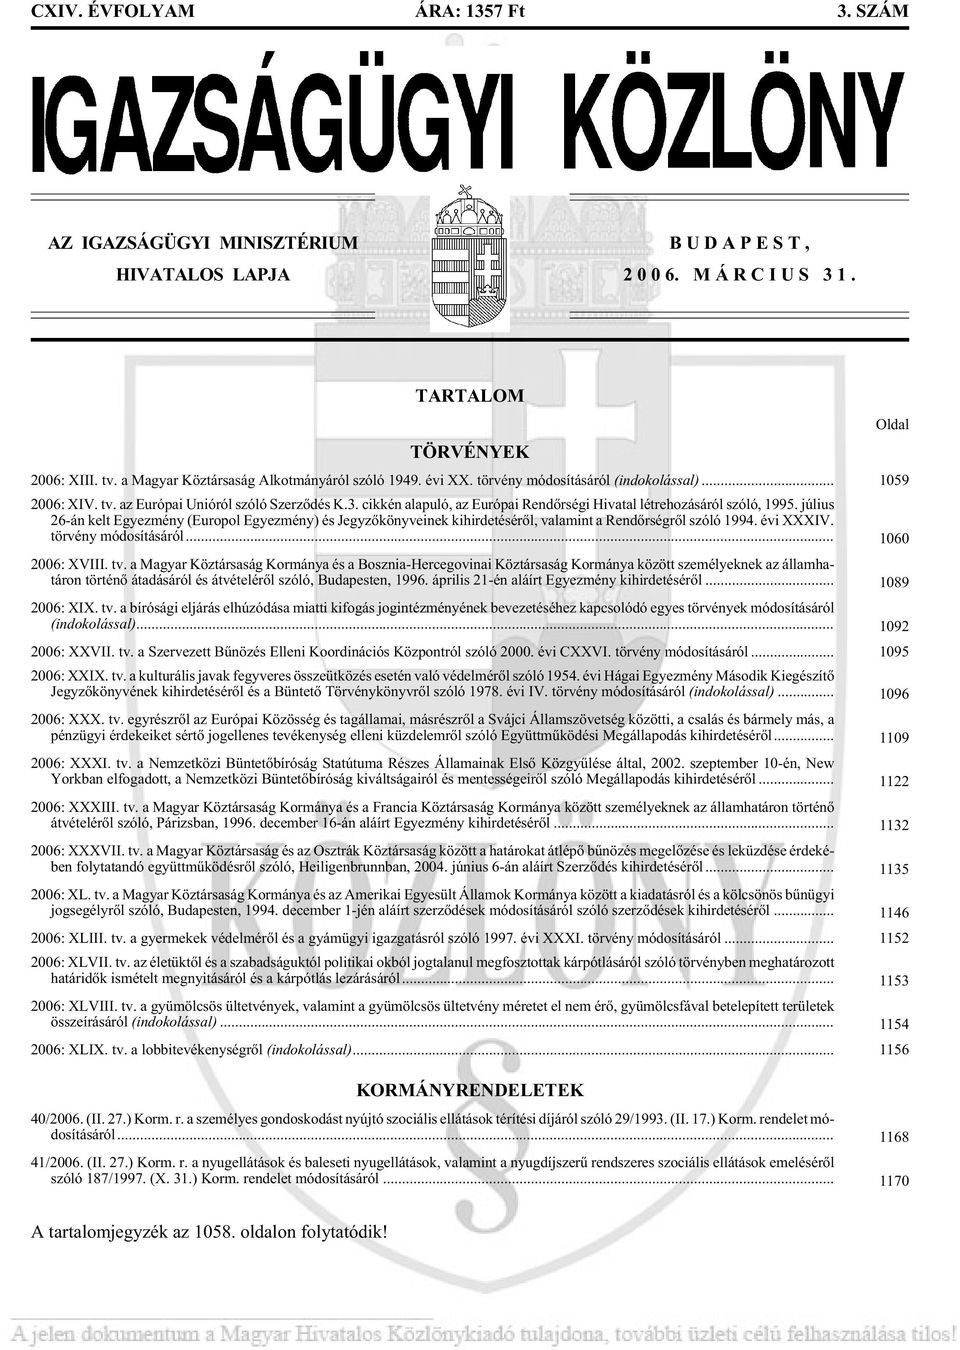 cik kén alapuló, az Európai Rendõrségi Hivatal létrehozásáról szóló, 1995. július 26-án kelt Egyez mény (Eu ro pol Egyez mény) és Jegy zõ könyveinek kihirdetésérõl, valamint a Rendõrségrõl szóló 1994.